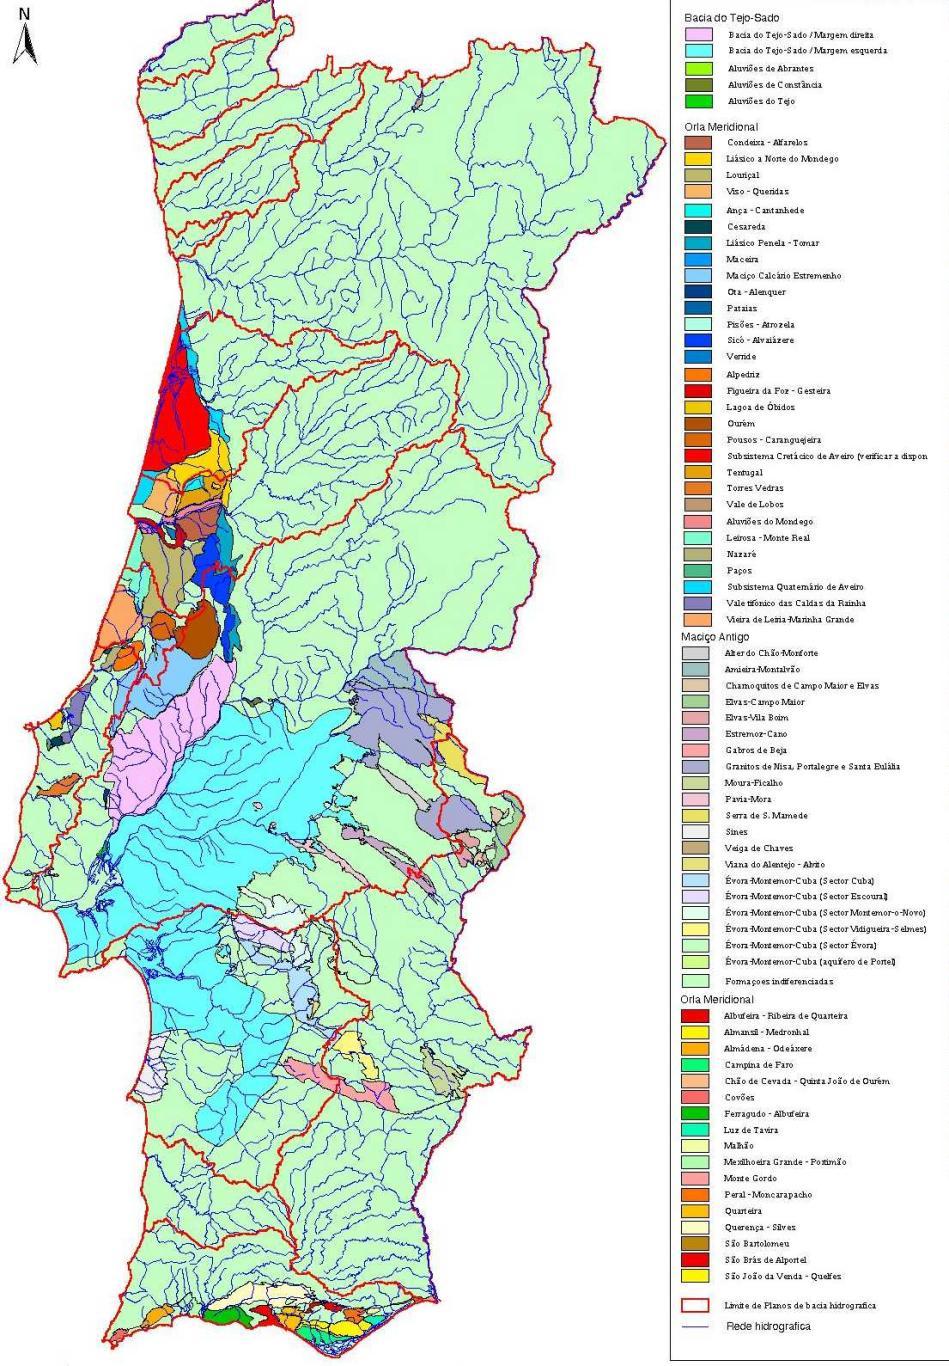 METODOLOGIA DE DELIMITAÇÃO DE MASSAS DE ÁGUA SUBTERRÂNEAS (1) Plano Nacional da Água (2001) Almeida et al (2000) e ERHSA 2001 Na tabela de sistemas aquíferos do Plano Nacional da Água (INAG, 2001)